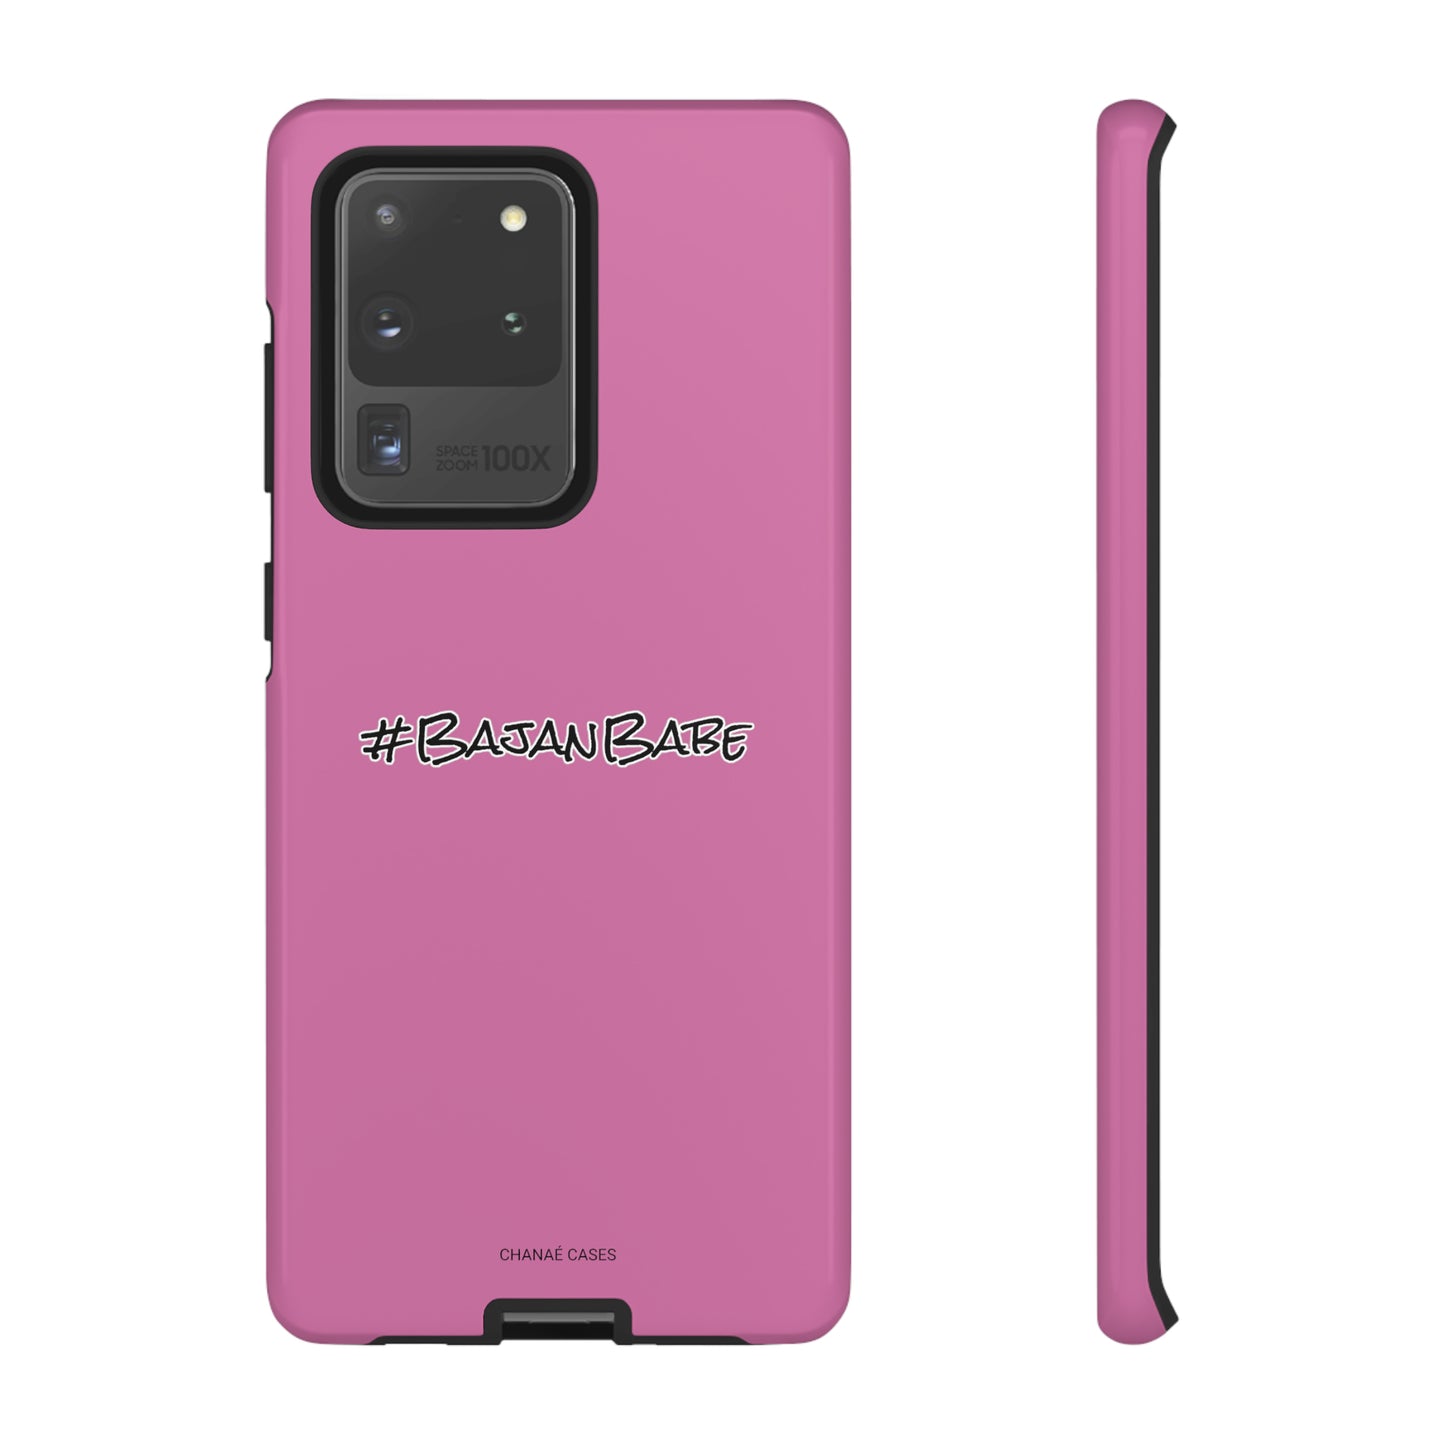 #BajanBabe iPhone "Tough" Case (Pink)